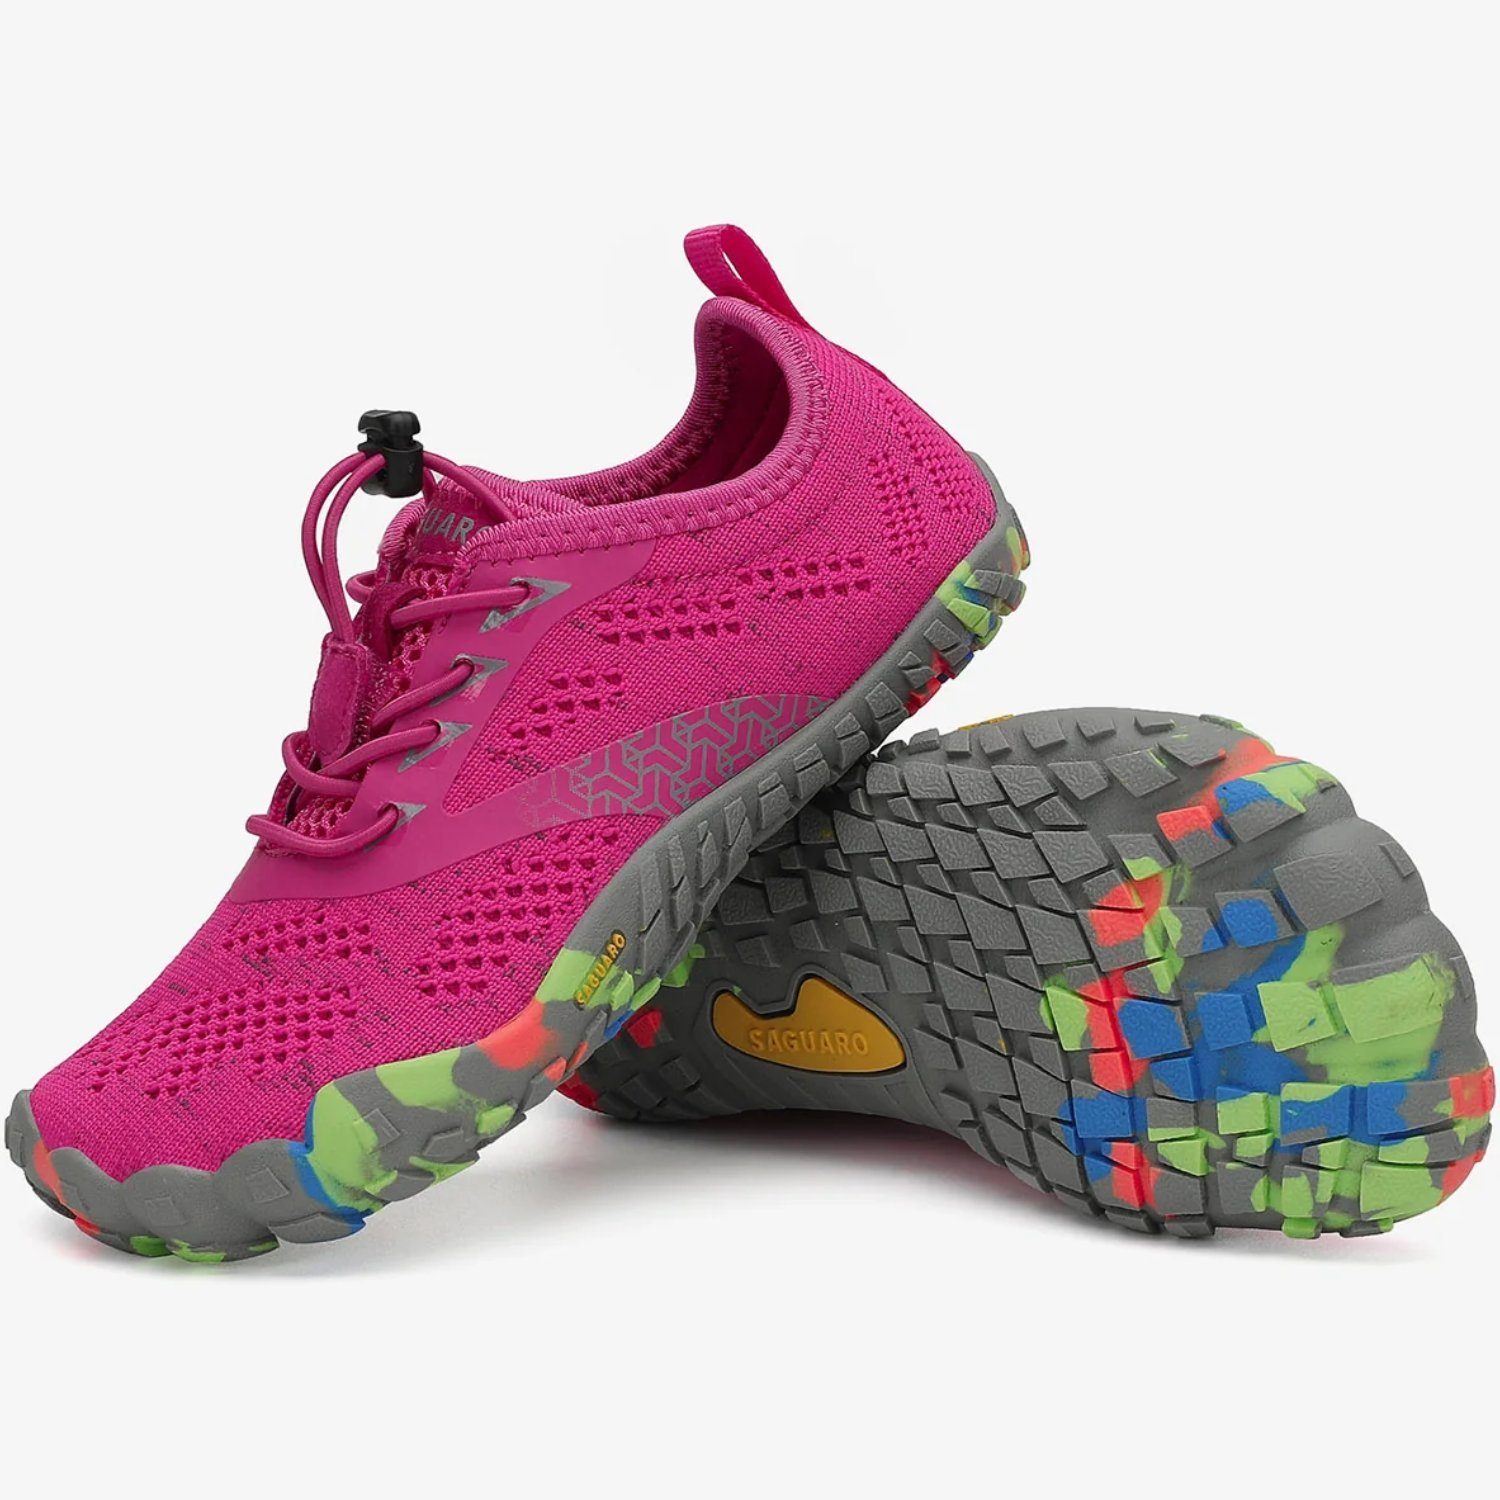 SAGUARO Barfußschuh (bequem, leicht, atmungsaktiv, rutschfest) Minimalschuhe Laufschuhe Sport-Schuhe Jogging Sneaker Trail-Running Rot 025 Kids